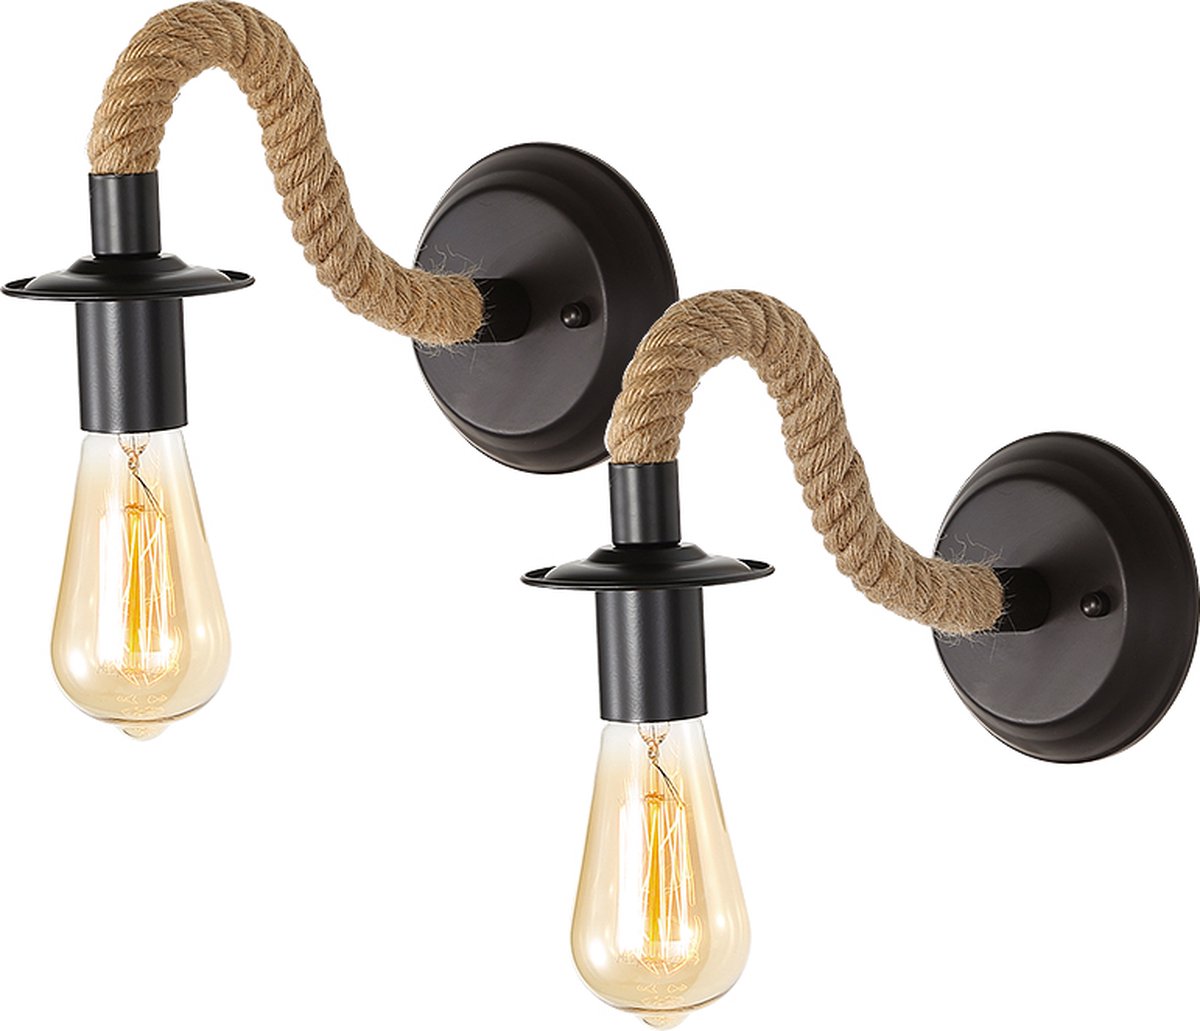 Delaveek-2-Delige Binnen Vintage Wandlamp - Gemaakt van Hennep Touw - E27 (lamp niet inbegrepen)